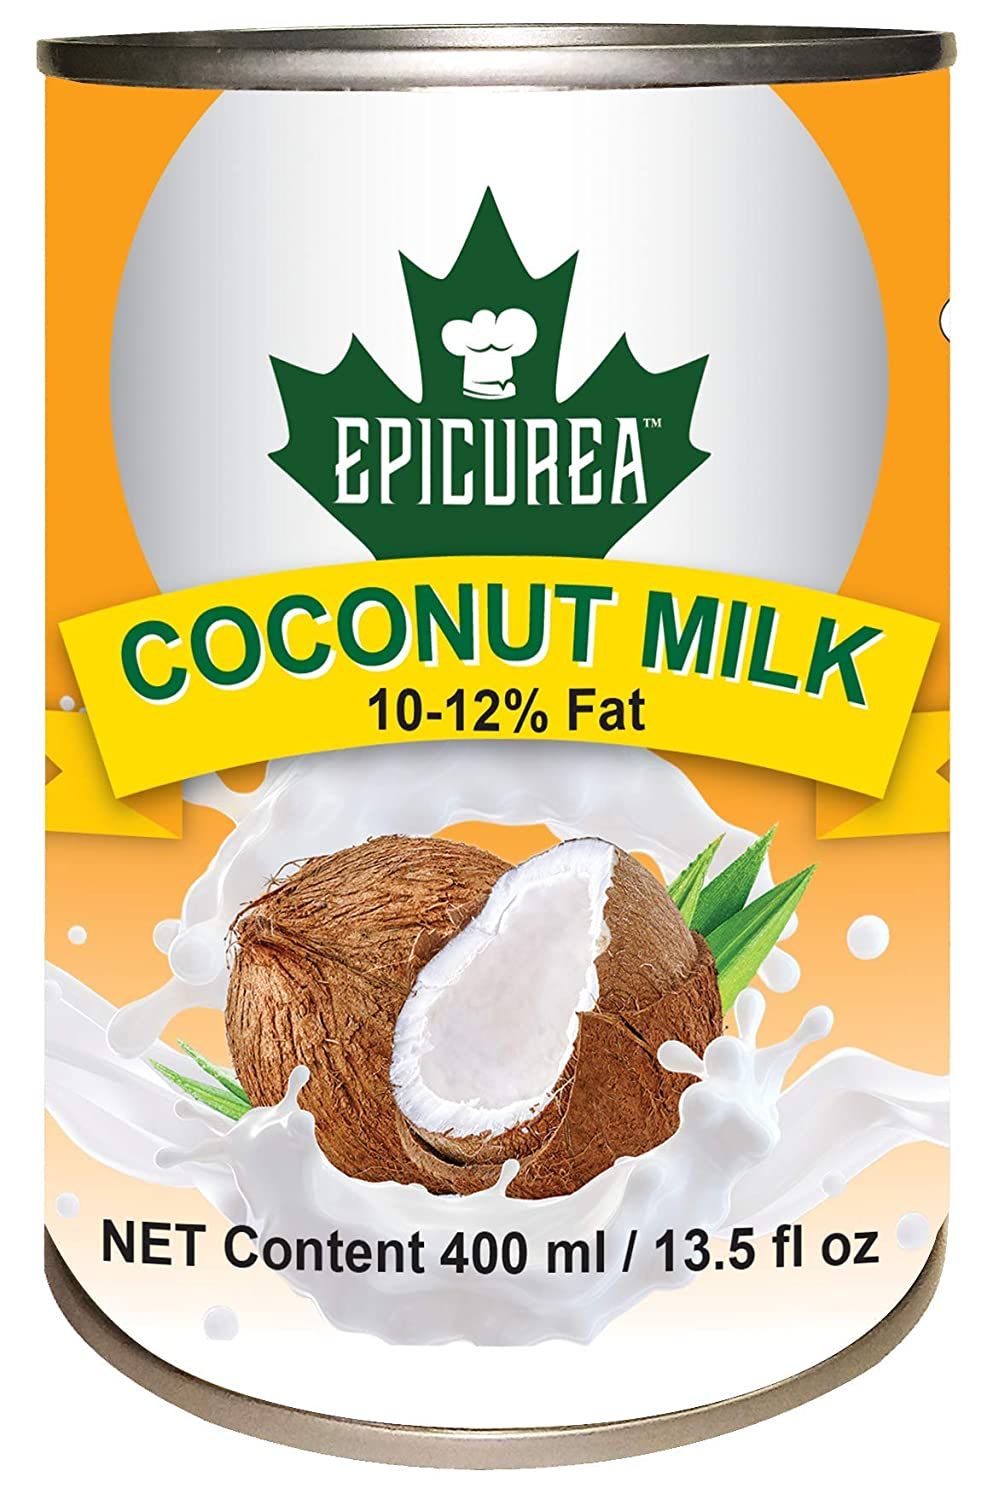 Epicurea Coconut Milk Image